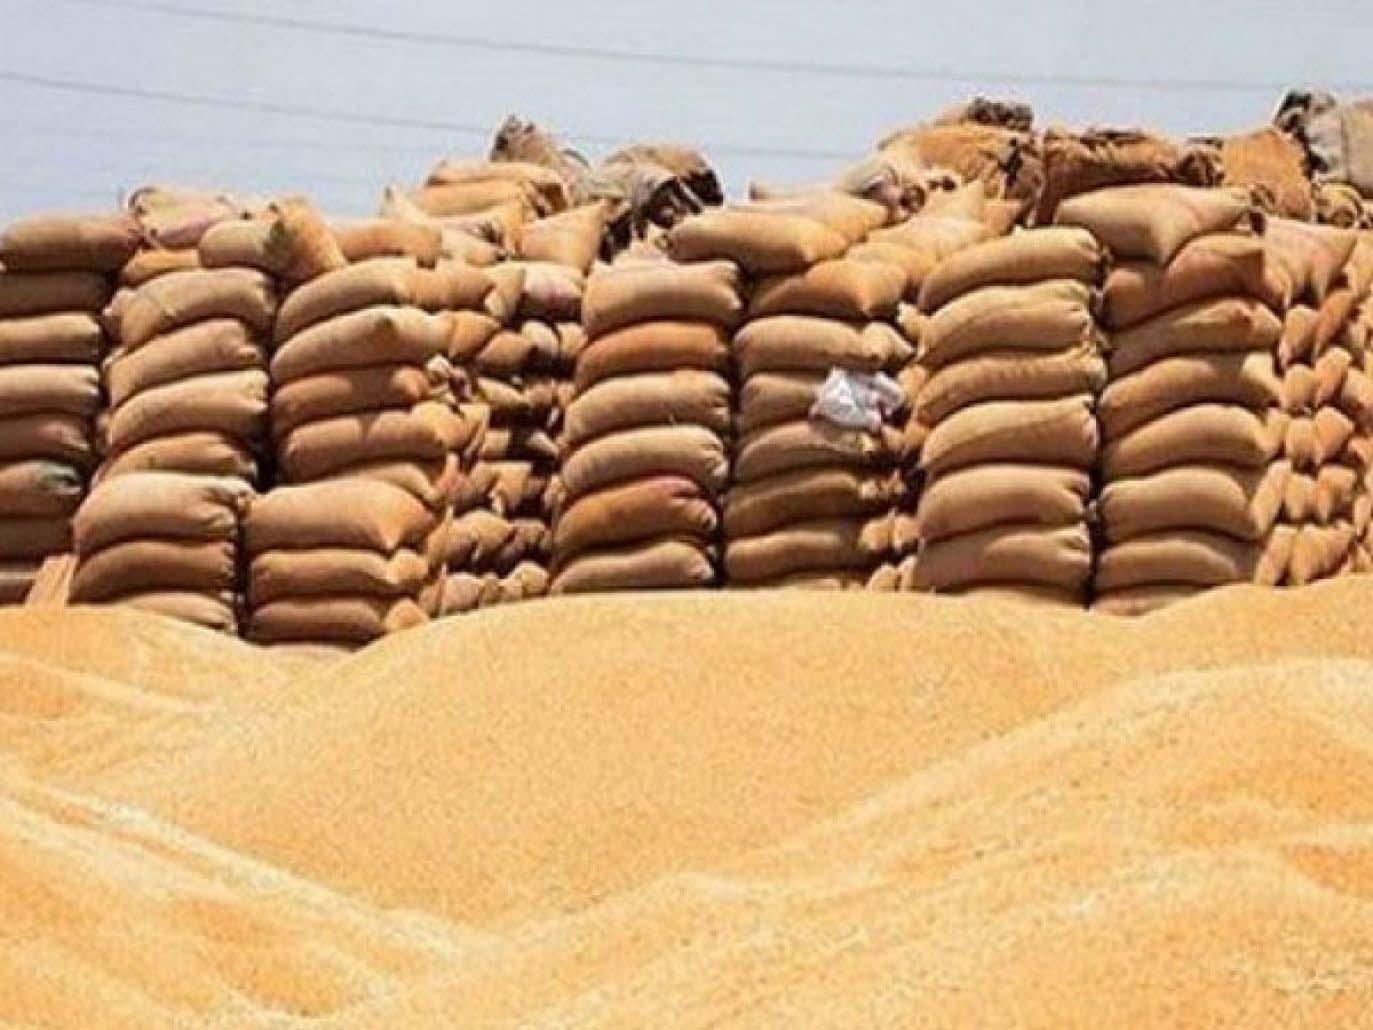 اختفاء القمح المصري في ظروف غامضة واستلام 3.9 مليون طن من توقعات بين 6 و10 ملايين